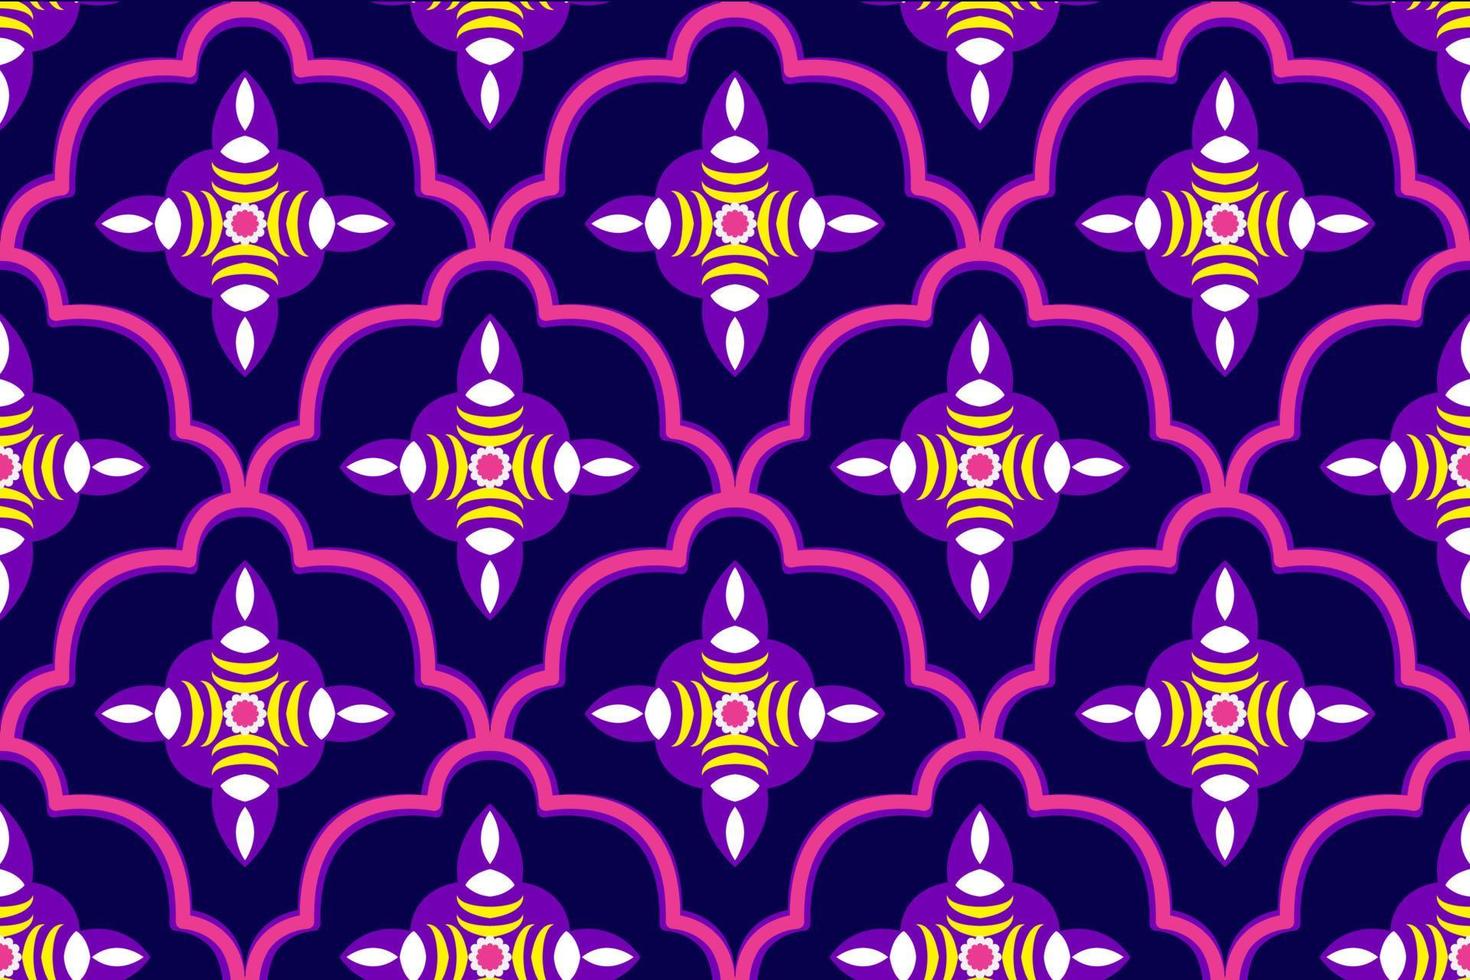 design de padrão sem emenda étnico marroquino abstrato. tecido asteca tapete mandala ornamento chevron têxtil decoração papel de parede. fundo de vetor de bordado tradicional indiano africano peru tribal